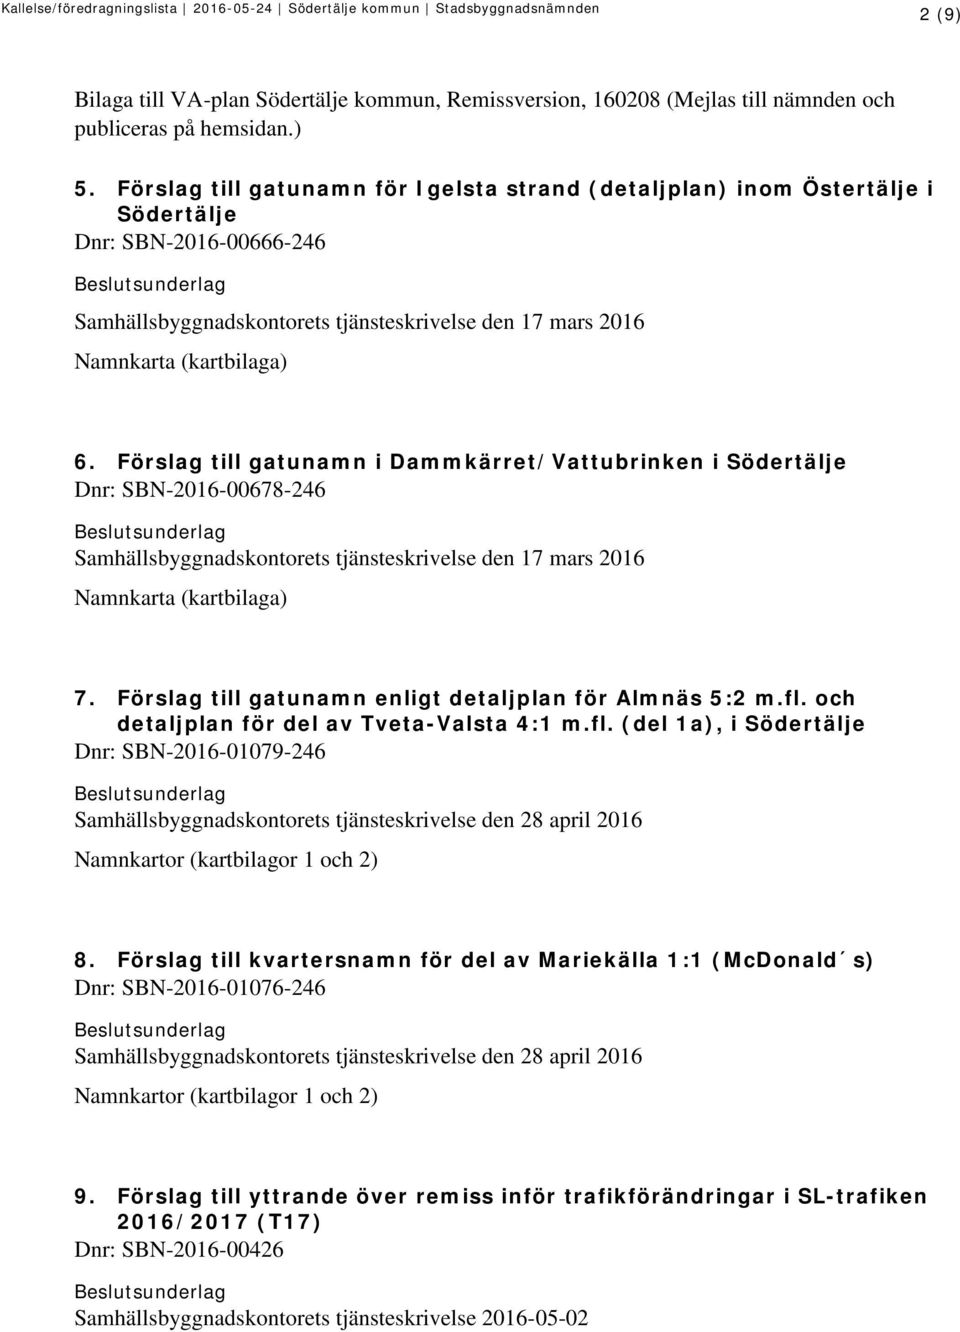 Förslag till gatunamn i Dammkärret/Vattubrinken i Södertälje Dnr: SBN-2016-00678-246 Samhällsbyggnadskontorets tjänsteskrivelse den 17 mars 2016 Namnkarta (kartbilaga) 7.